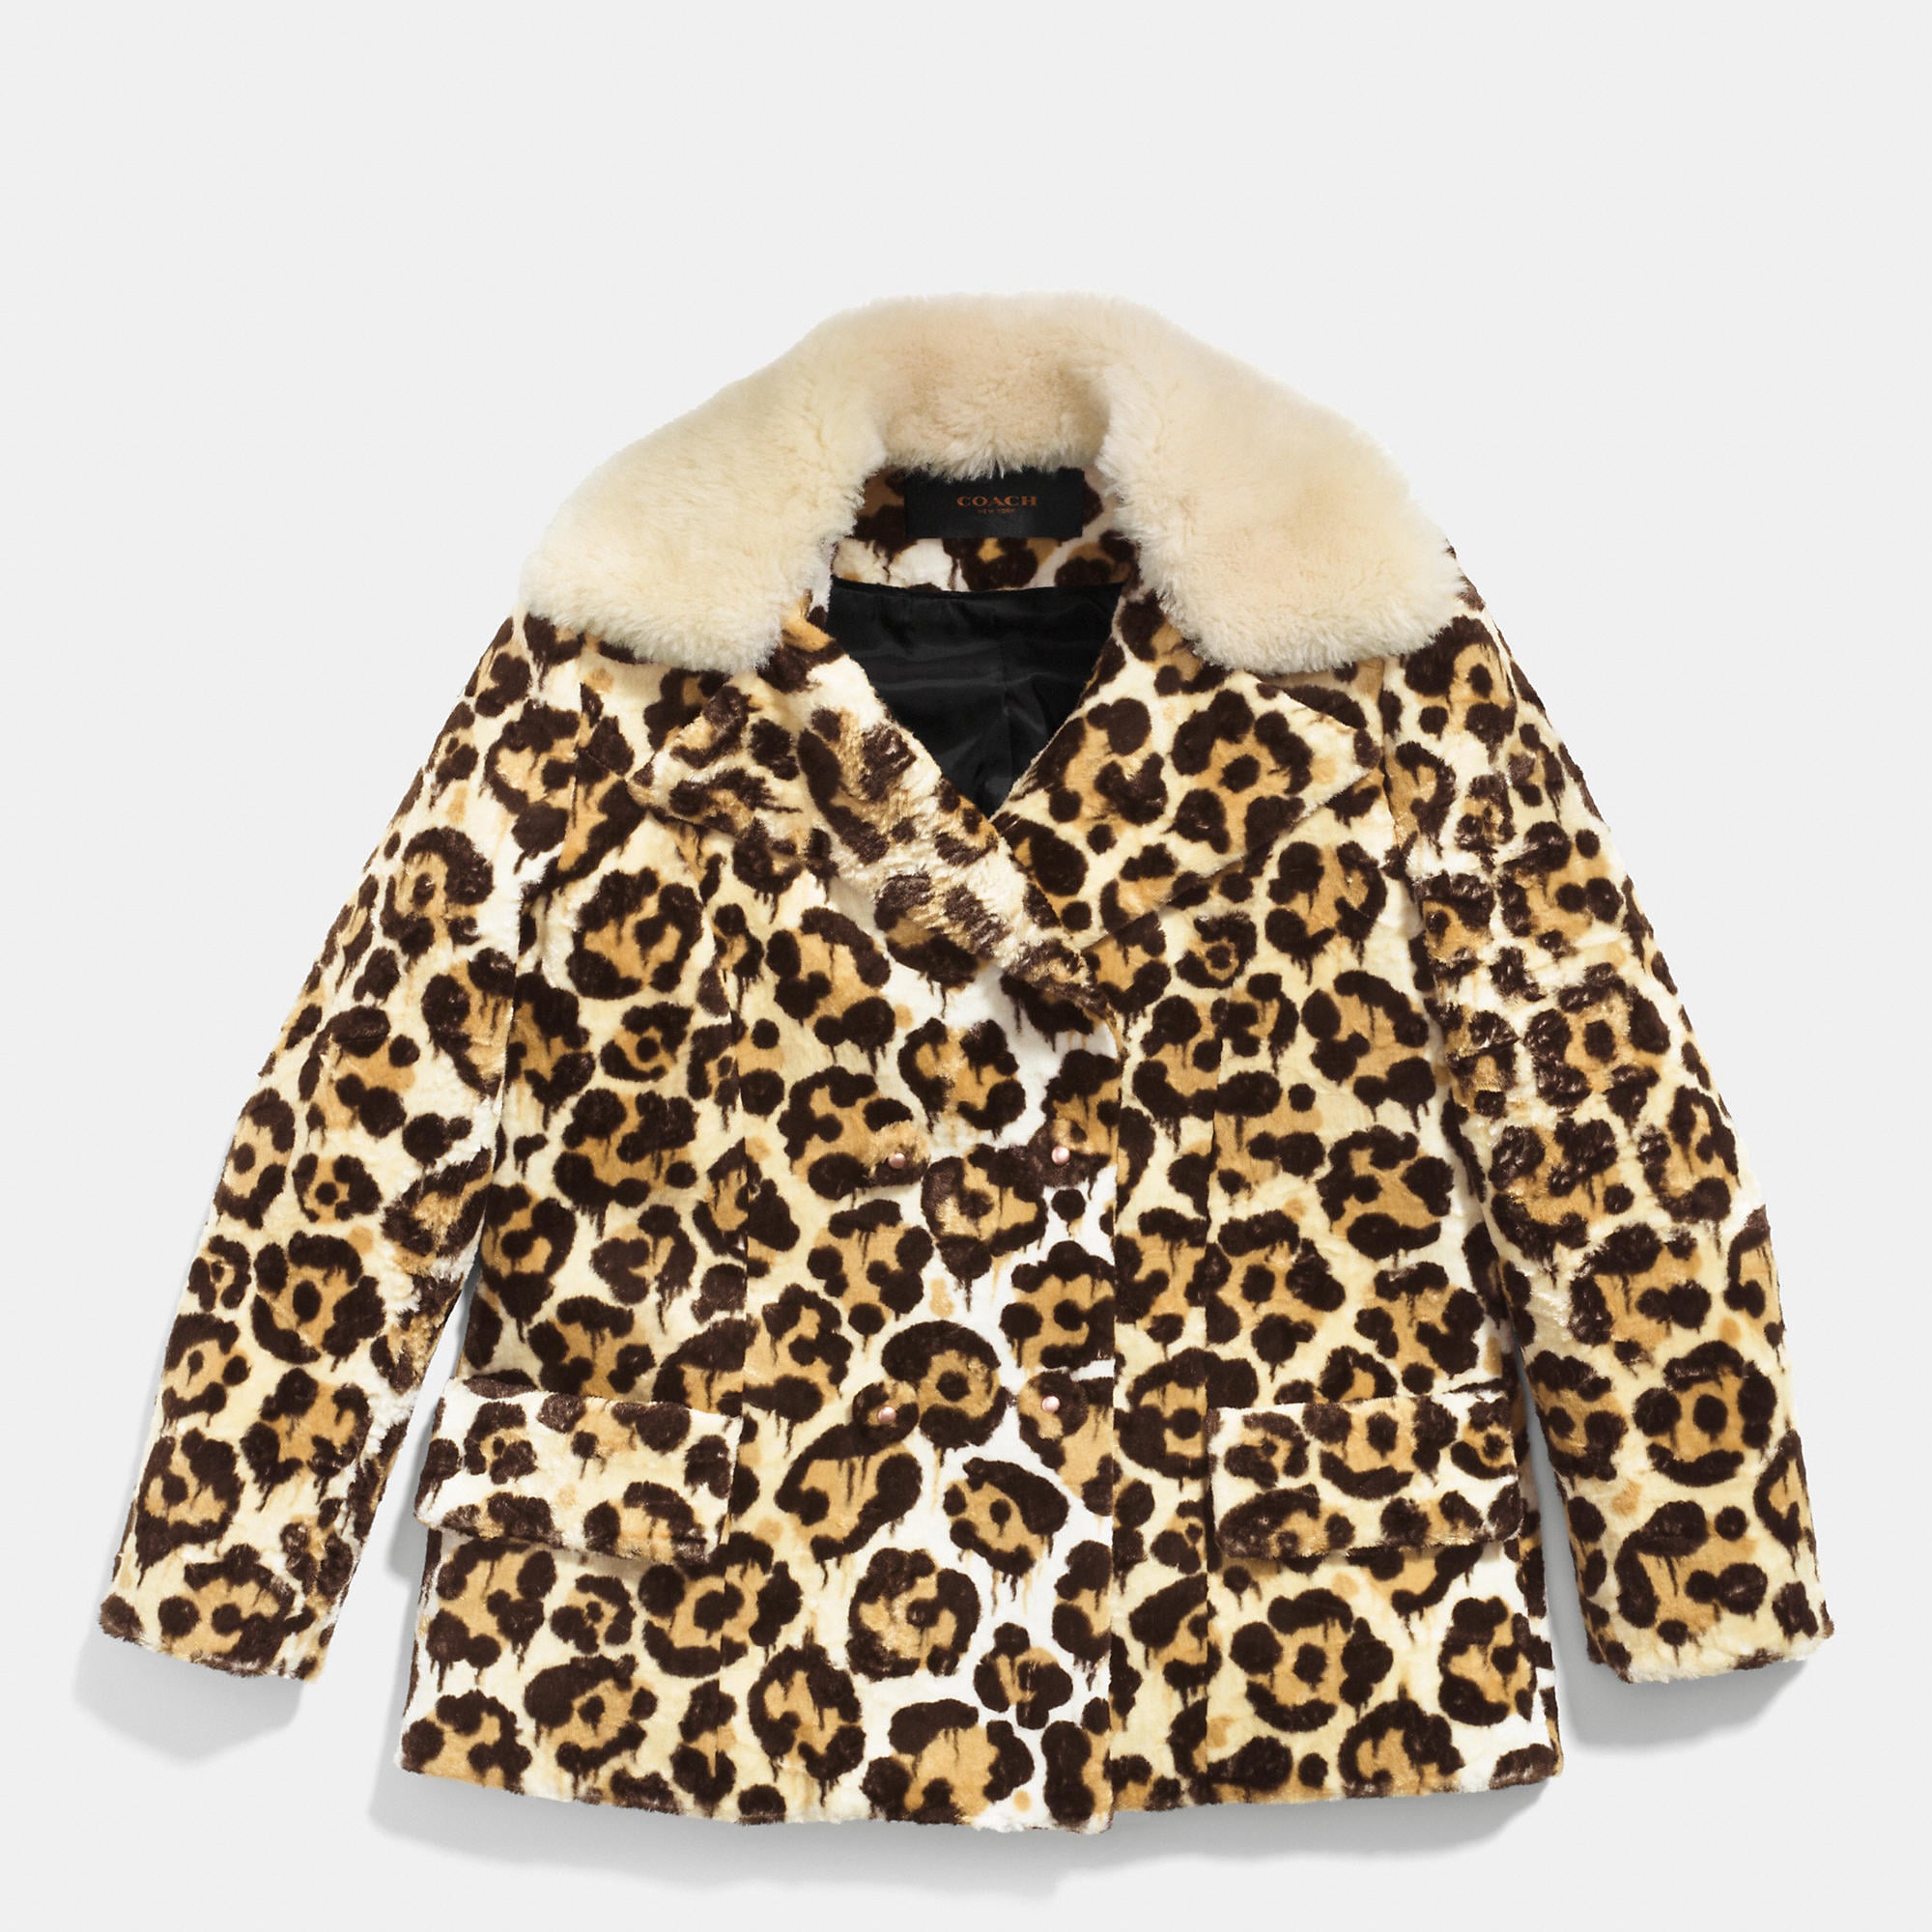 Chloe Grace Moretz Leopard Coat Paris Fashion Week